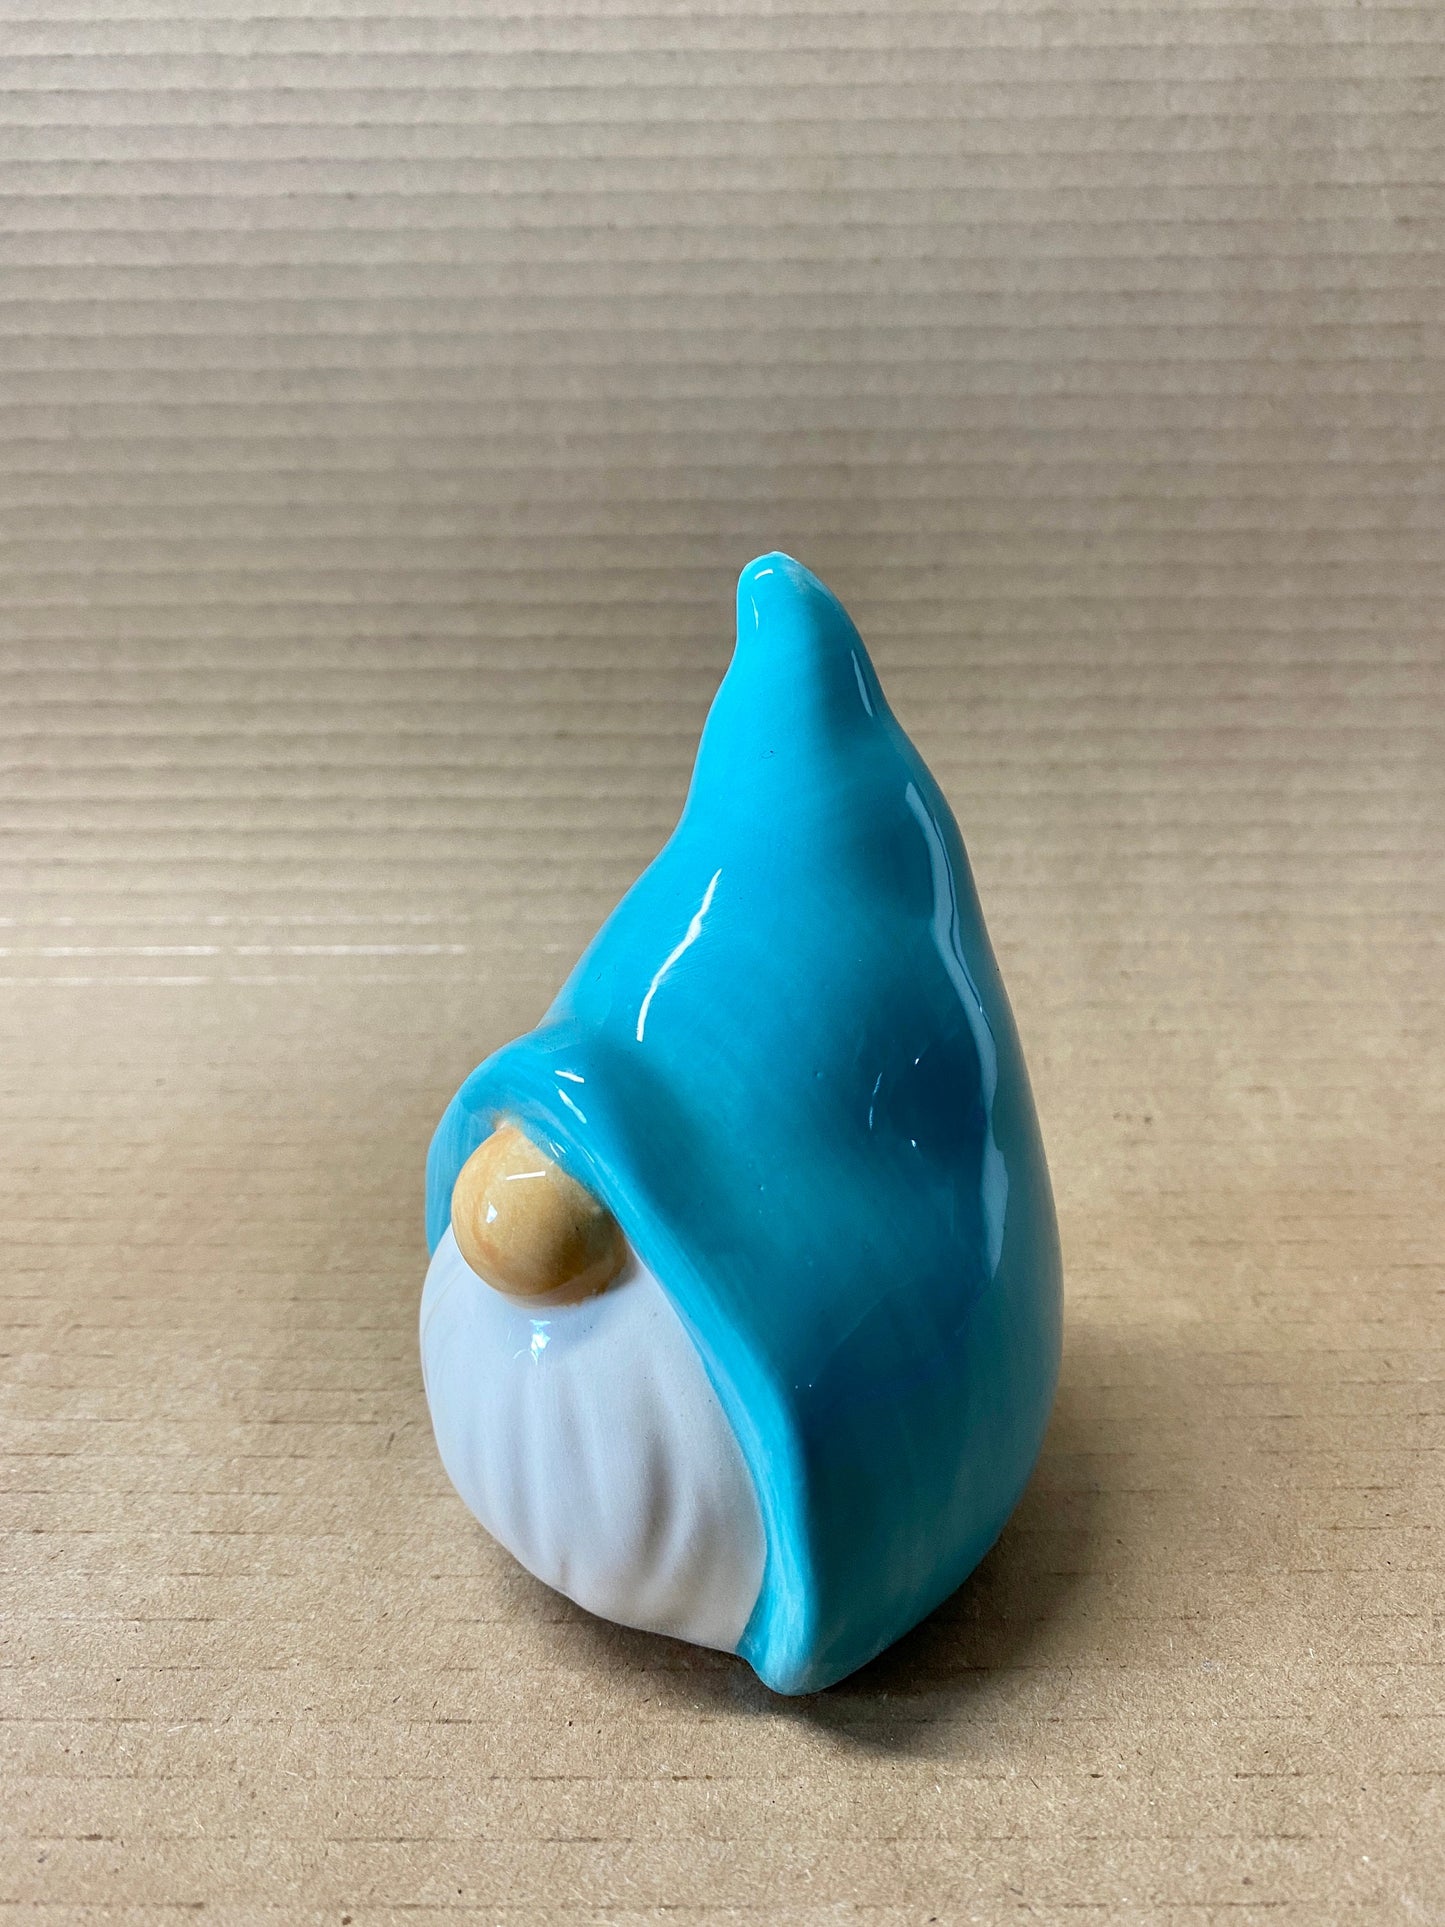 Blue hat Ceramic Gnome